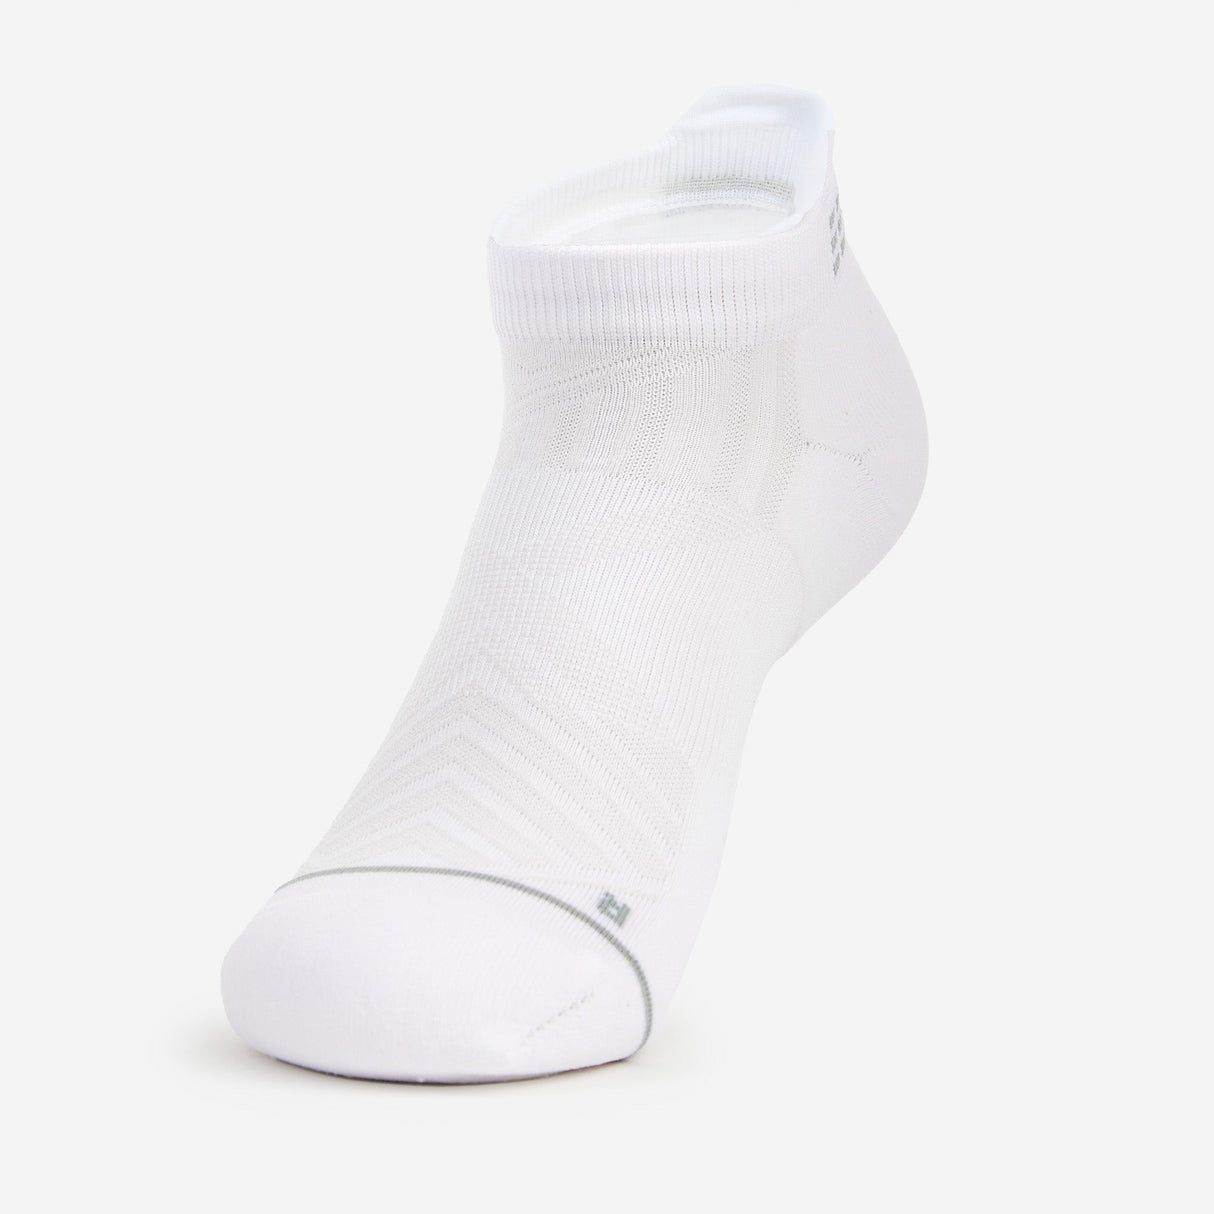 Thorlo Experia X Speed Performance Cushion No Show Tab Socks  -  Medium / White